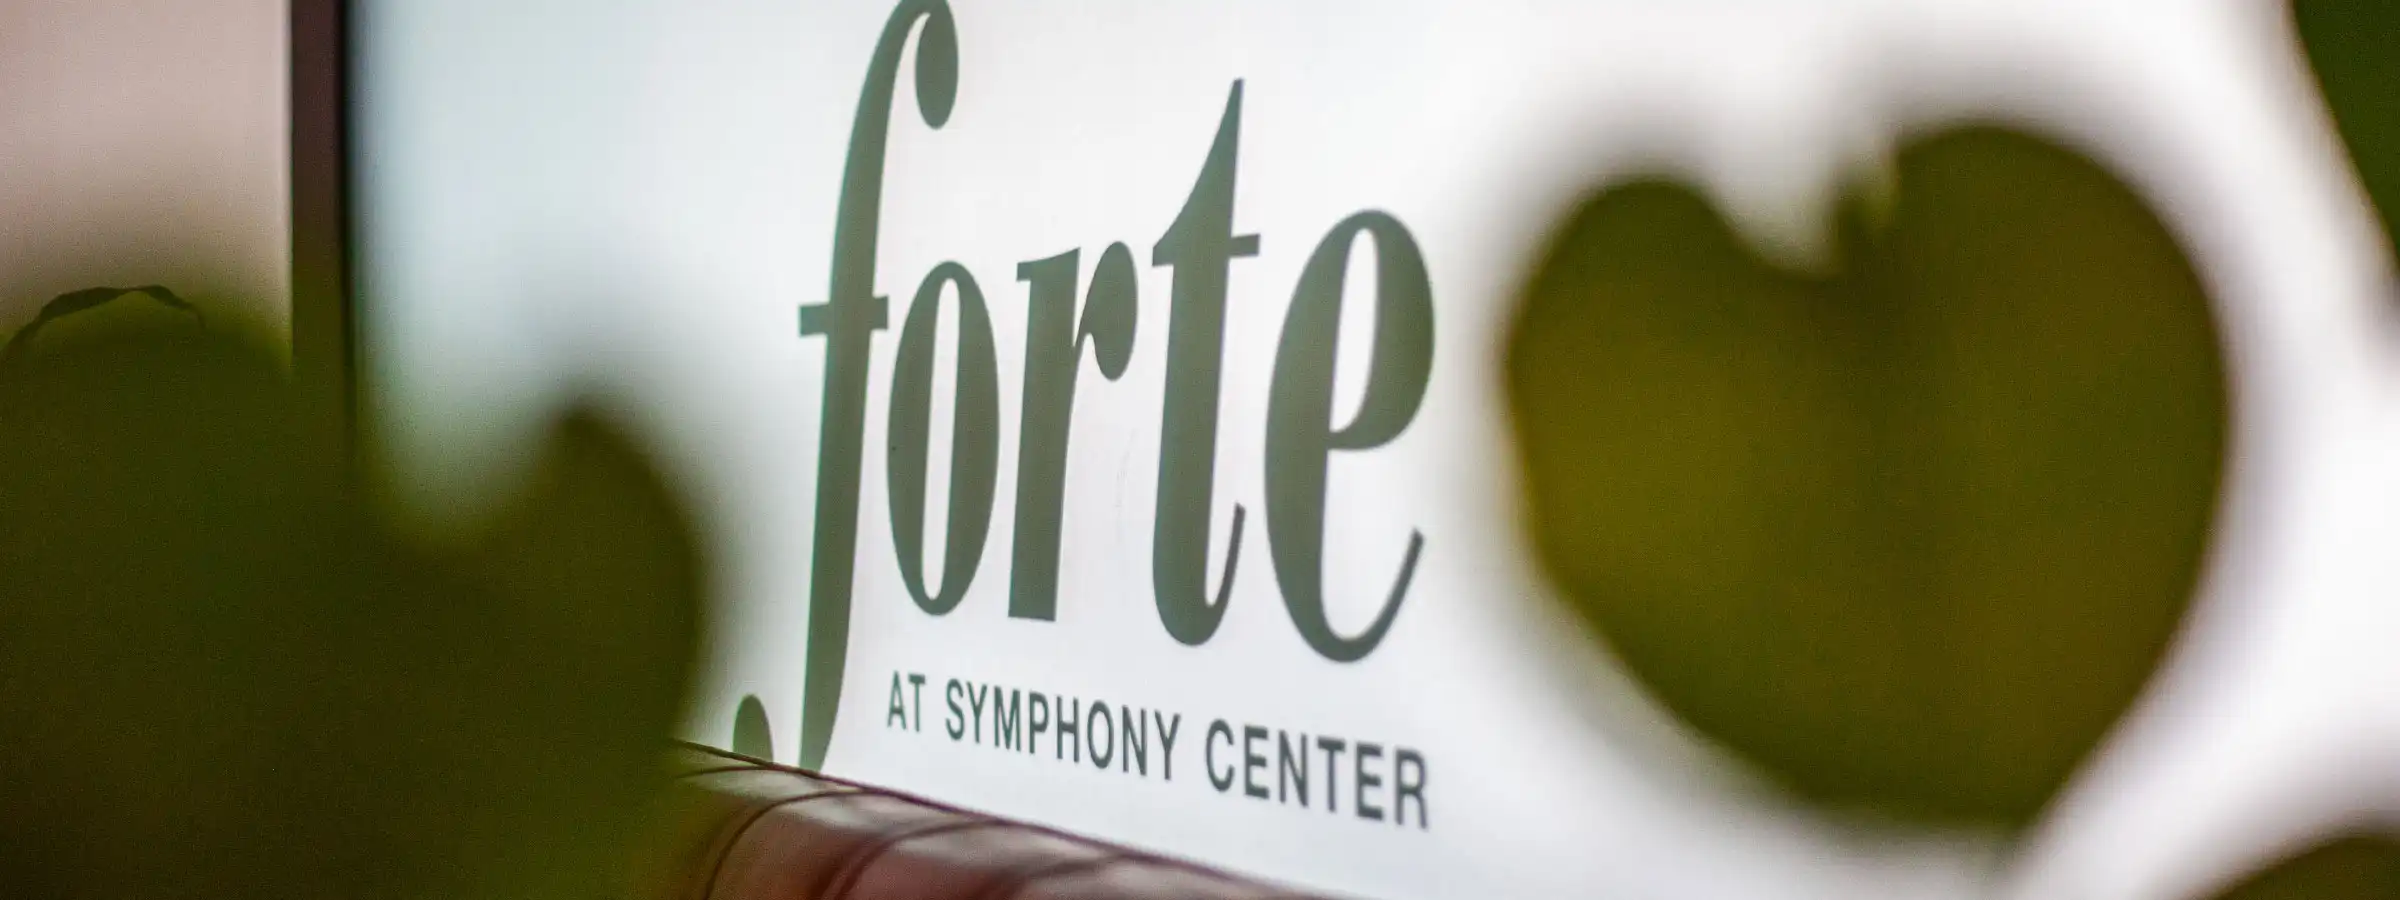 Forte at Symphony Center Header Image Two - desktop version